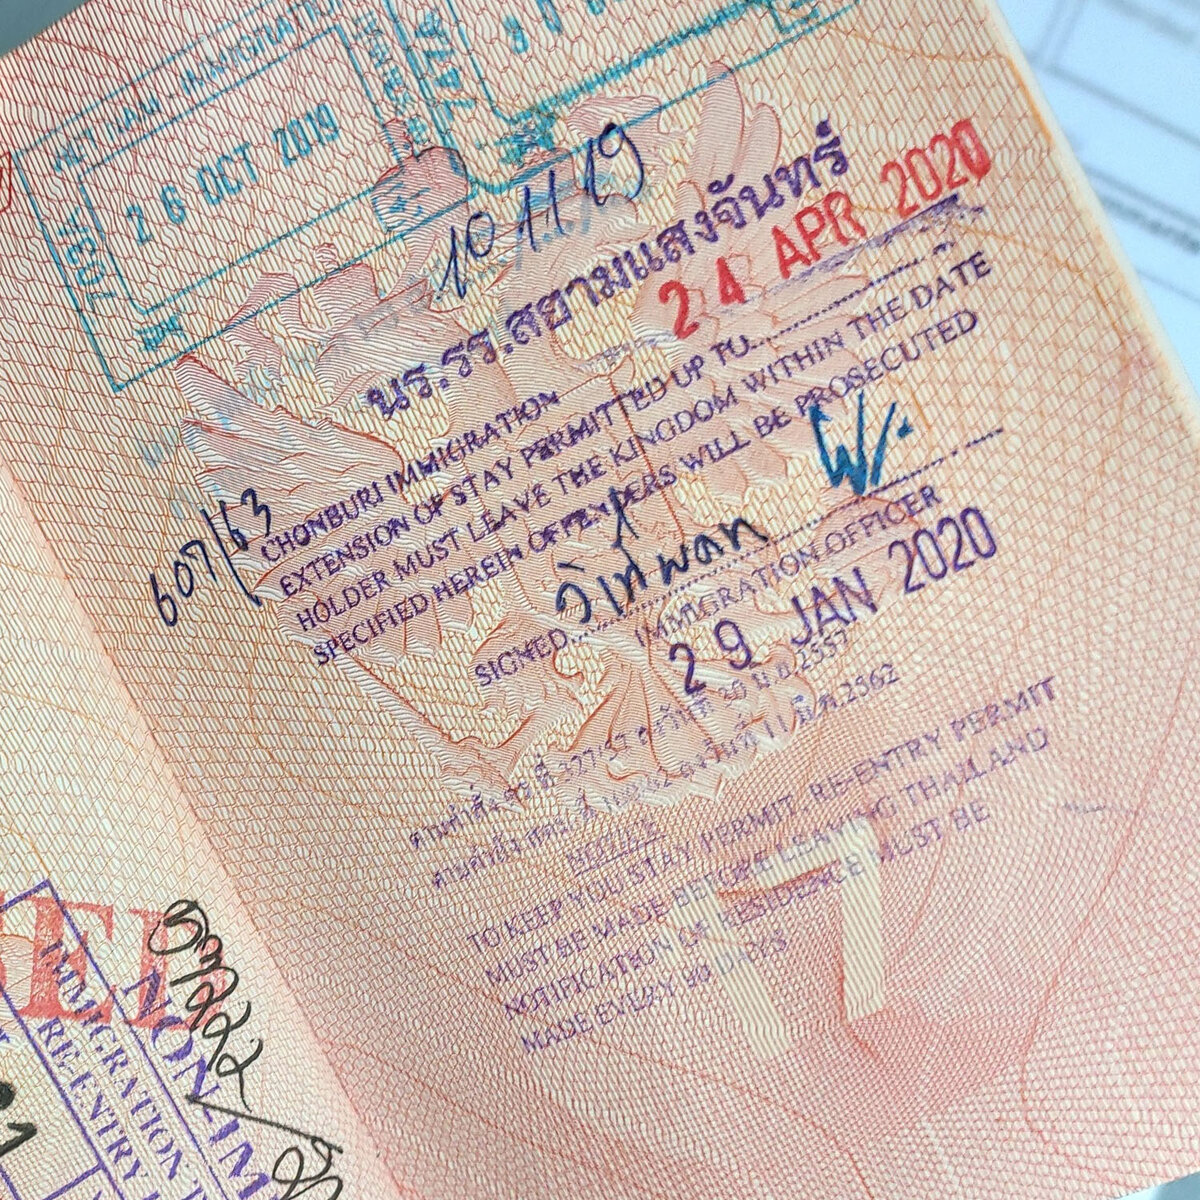 виза в тайланд размер